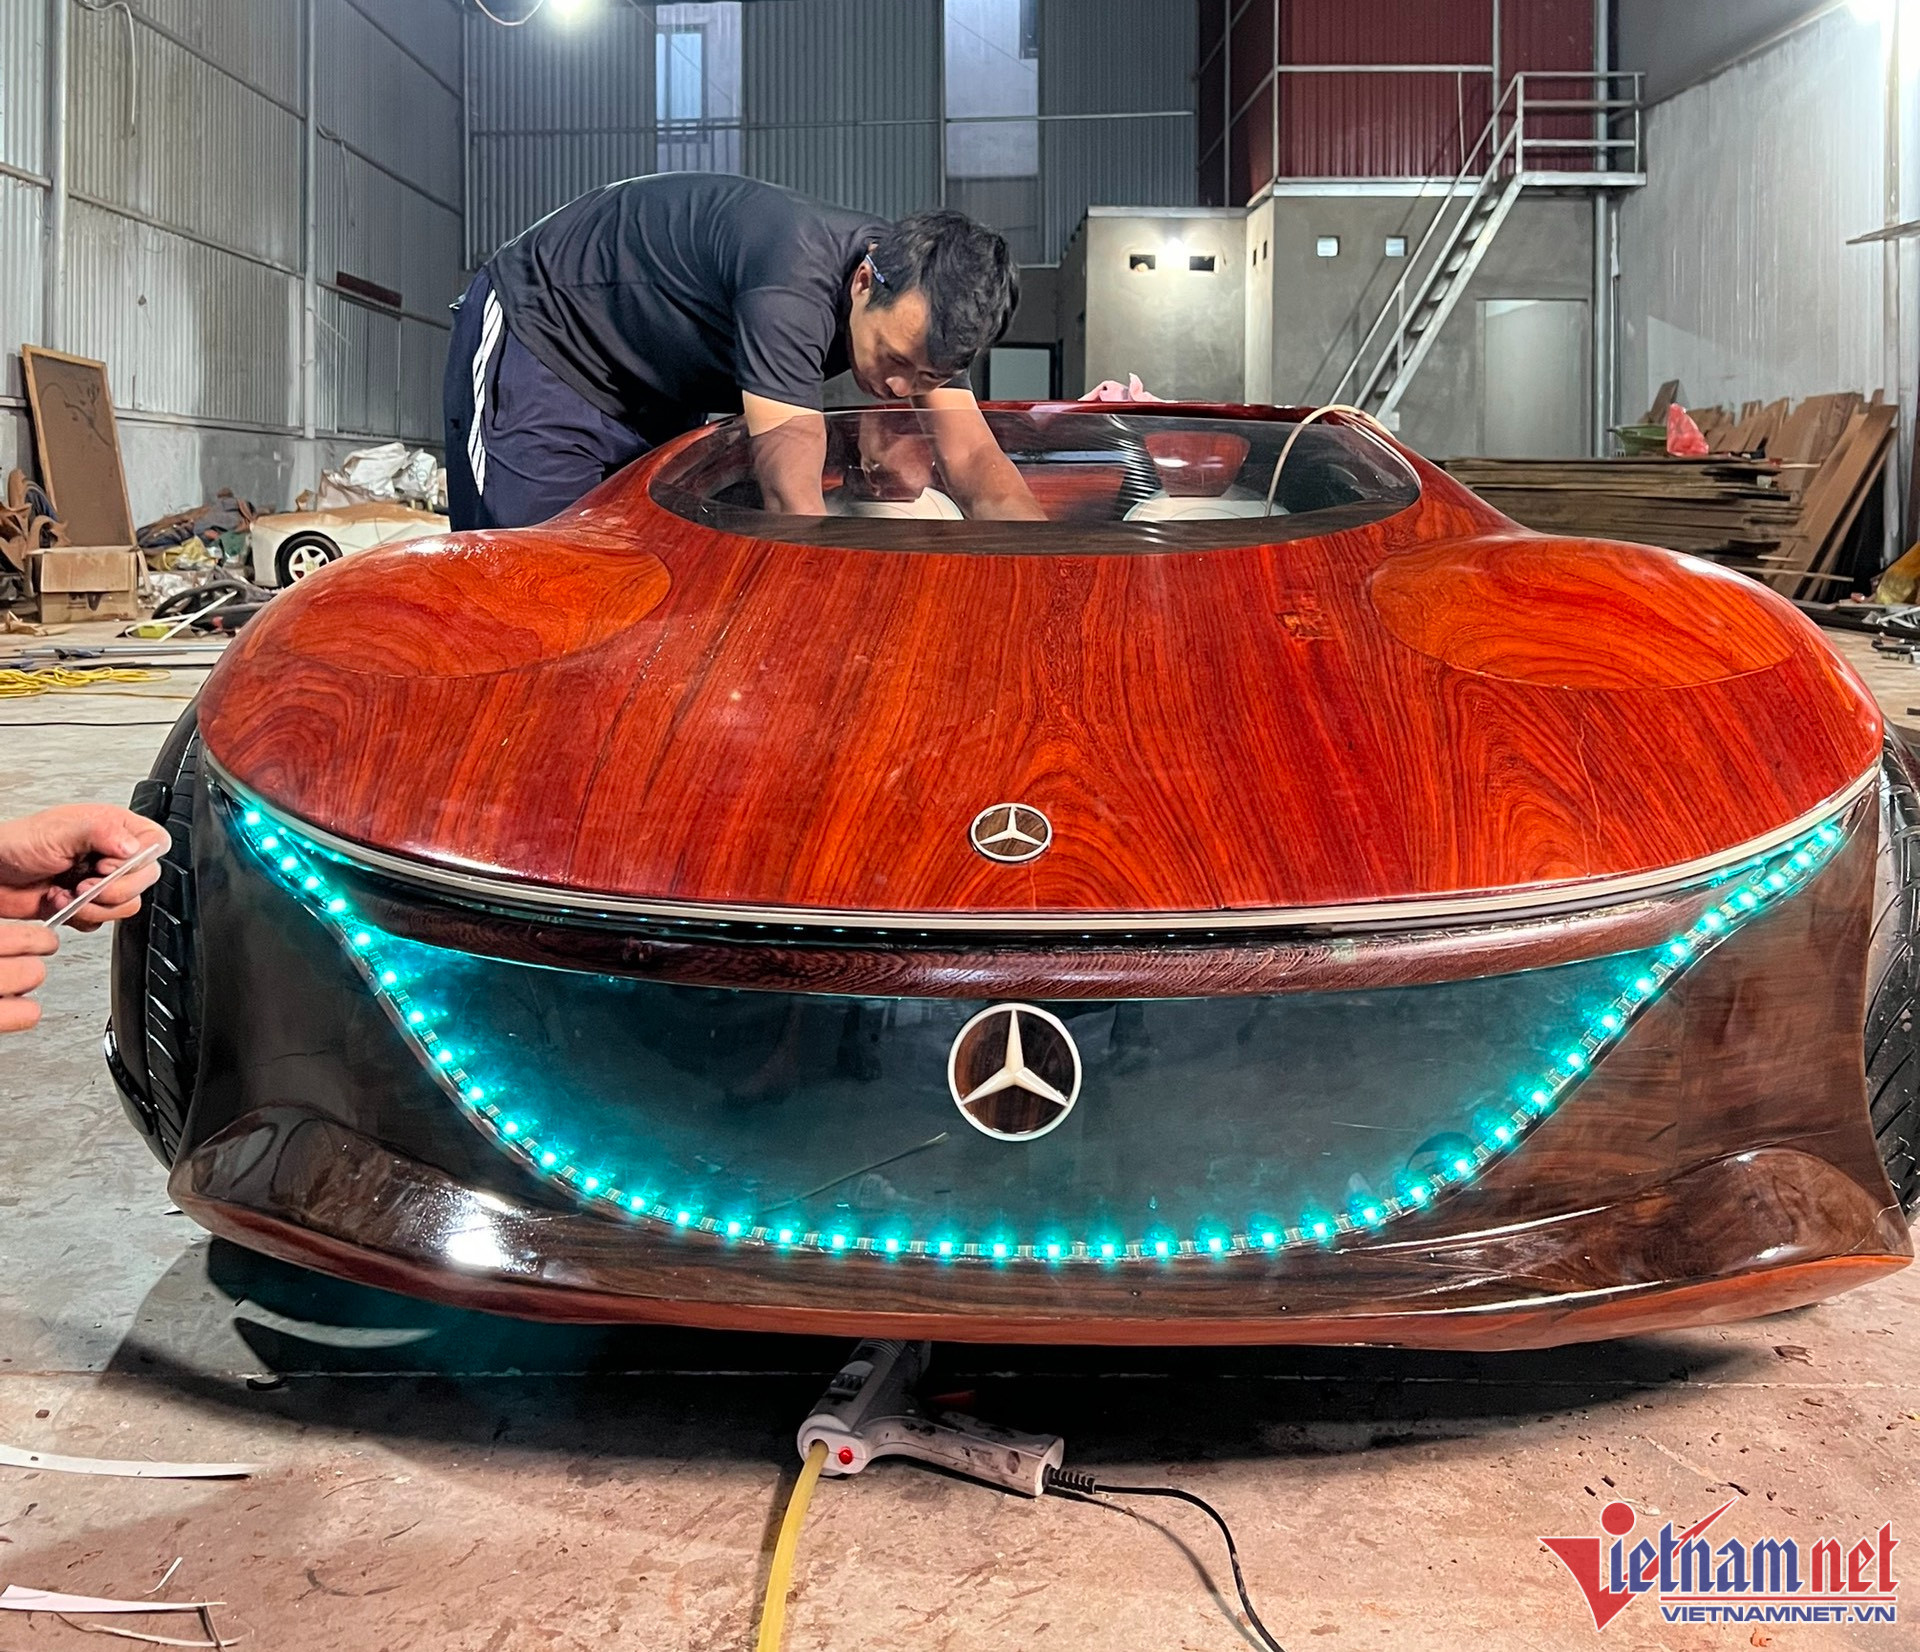 MercedesBenz Vision AVTR  cỗ xe tương lai bước ra từ Avatar  Đánh giá